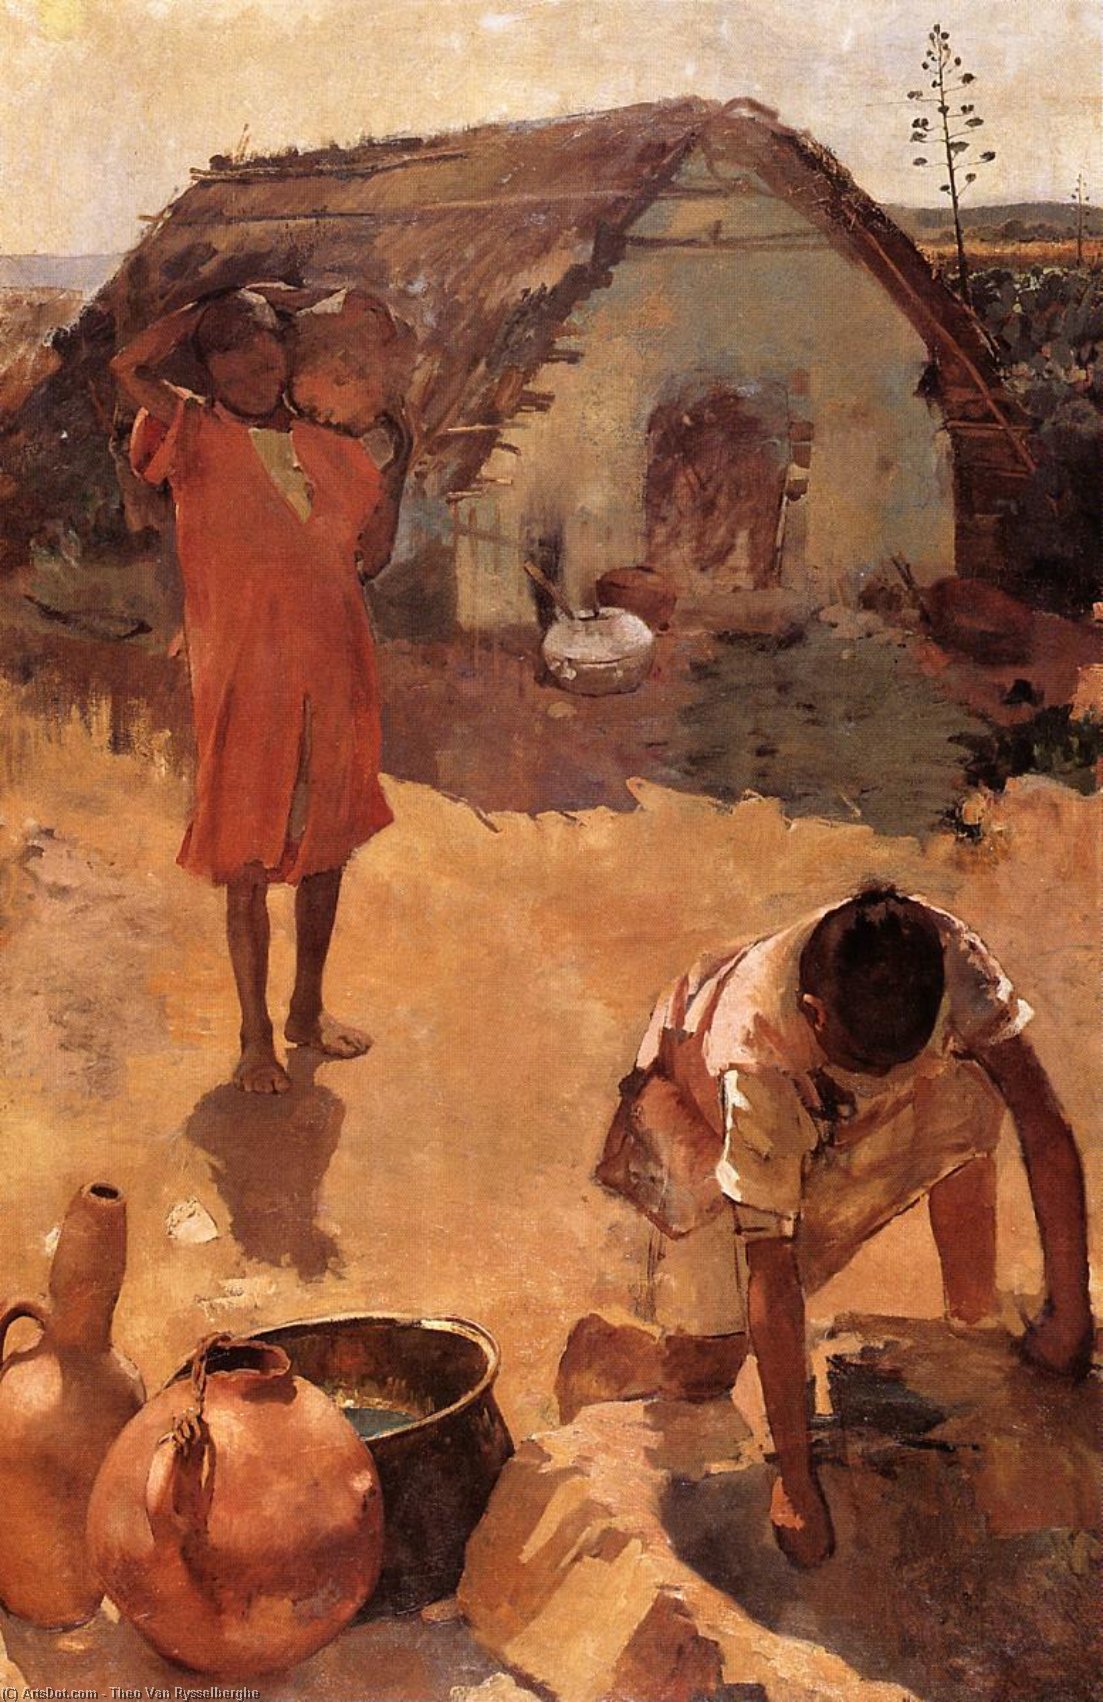 WikiOO.org - Εγκυκλοπαίδεια Καλών Τεχνών - Ζωγραφική, έργα τέχνης Theo Van Rysselberghe - Figures near a Well in Morocco